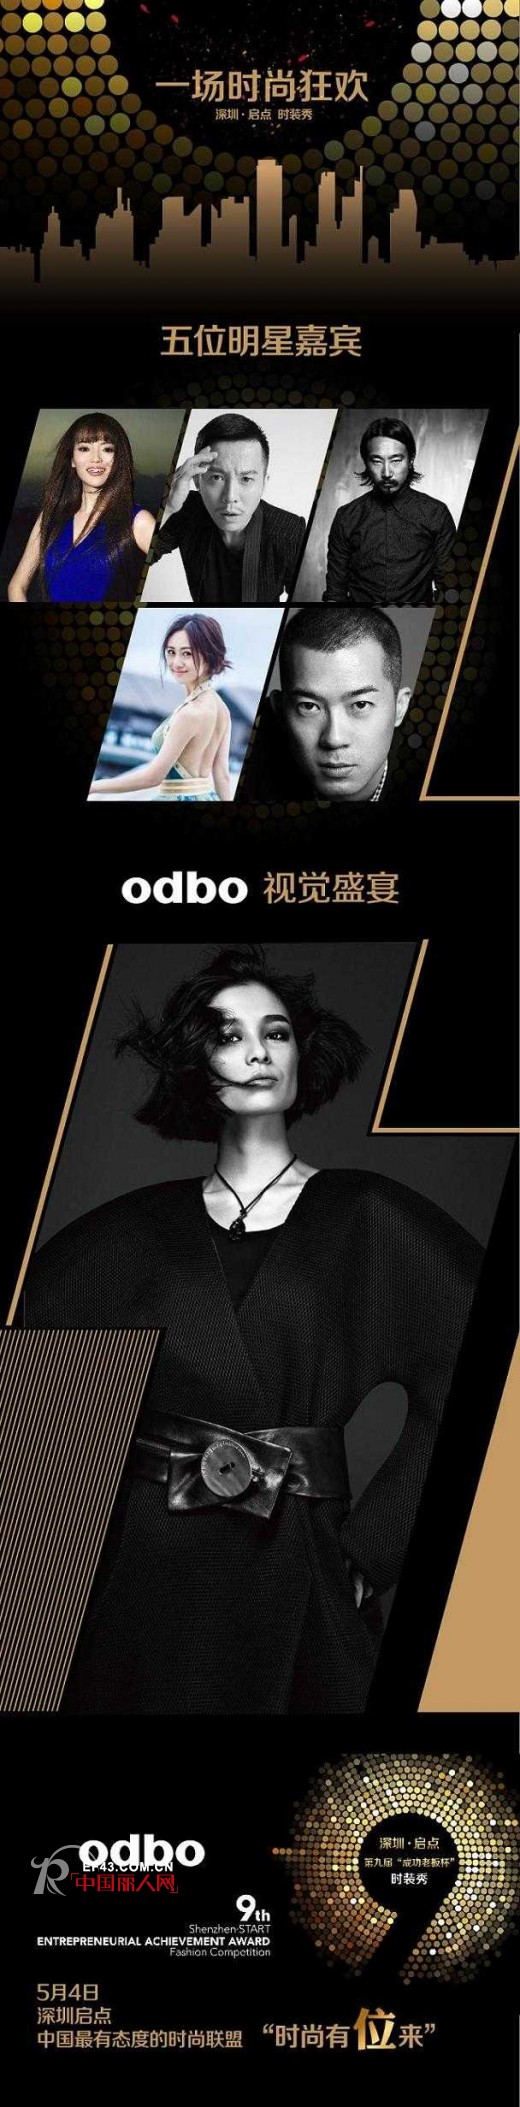 “ 深圳 · 启点 ” odbo将参加第九届“成功老板杯”时装秀